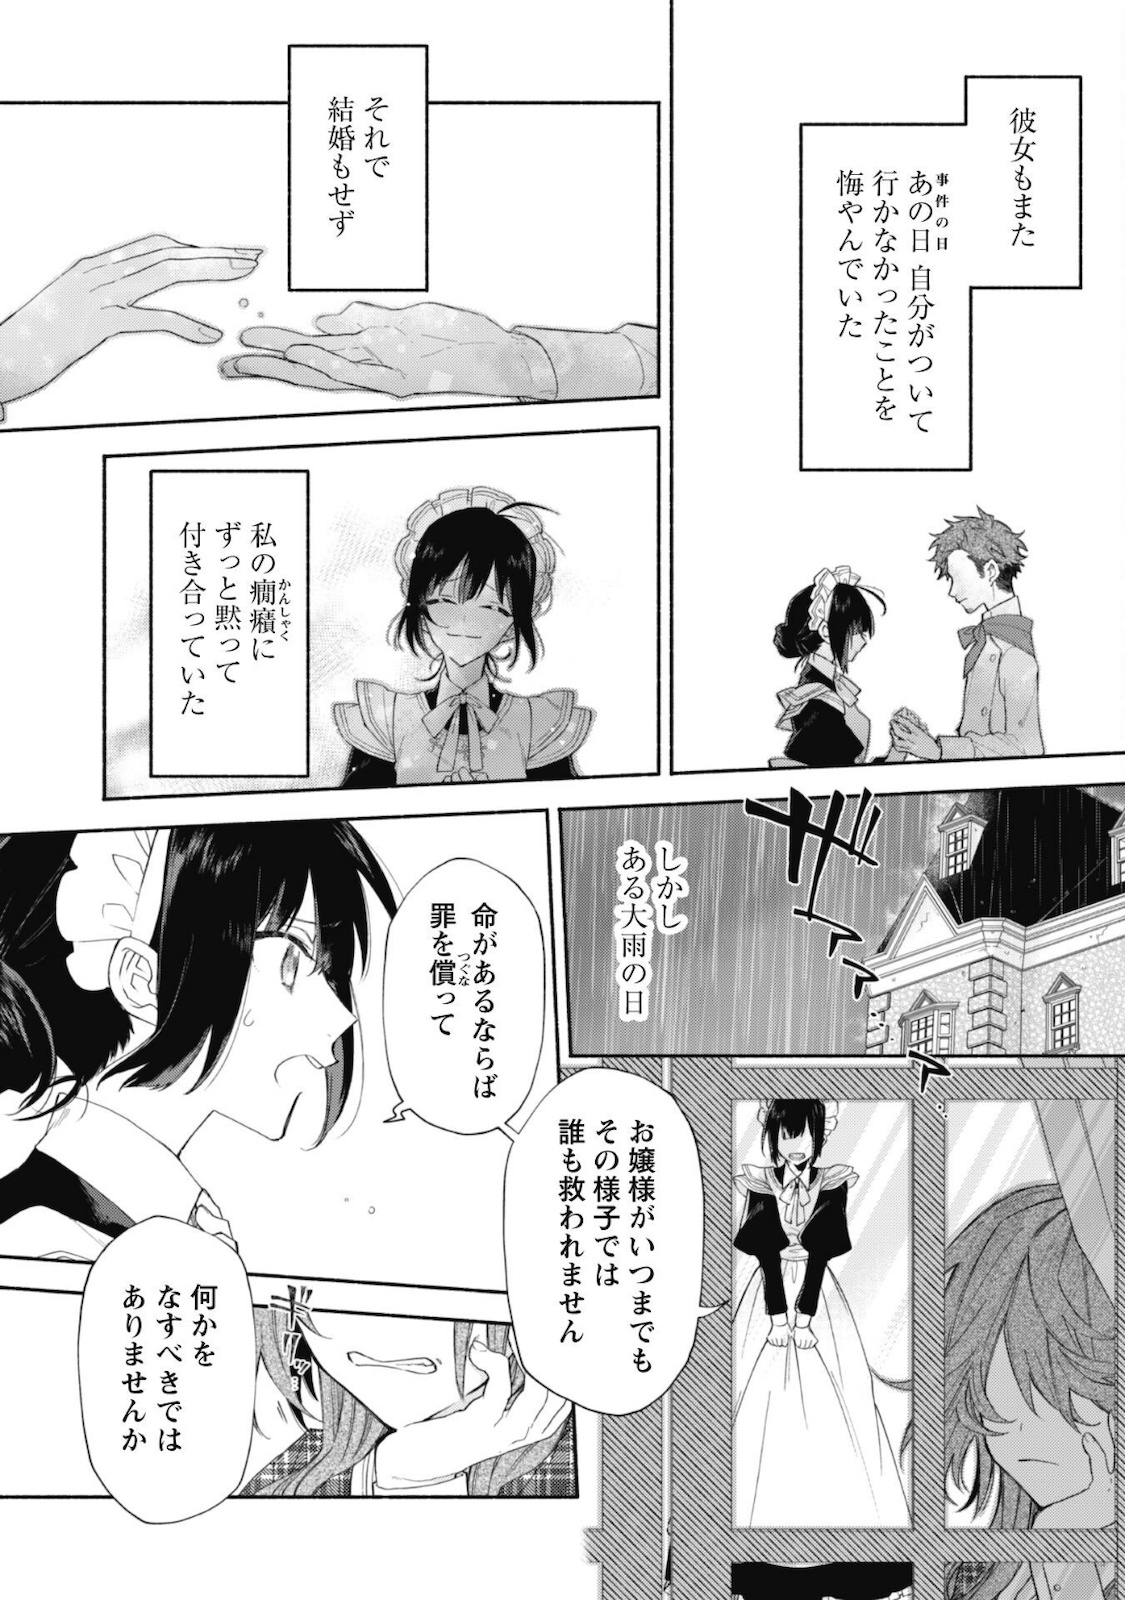 Moto Akuyaku Reijo Makimodotta no de Ouji-sama kara Tousou Shiyou to Omoimasu! - Chapter 3.1 - Page 7